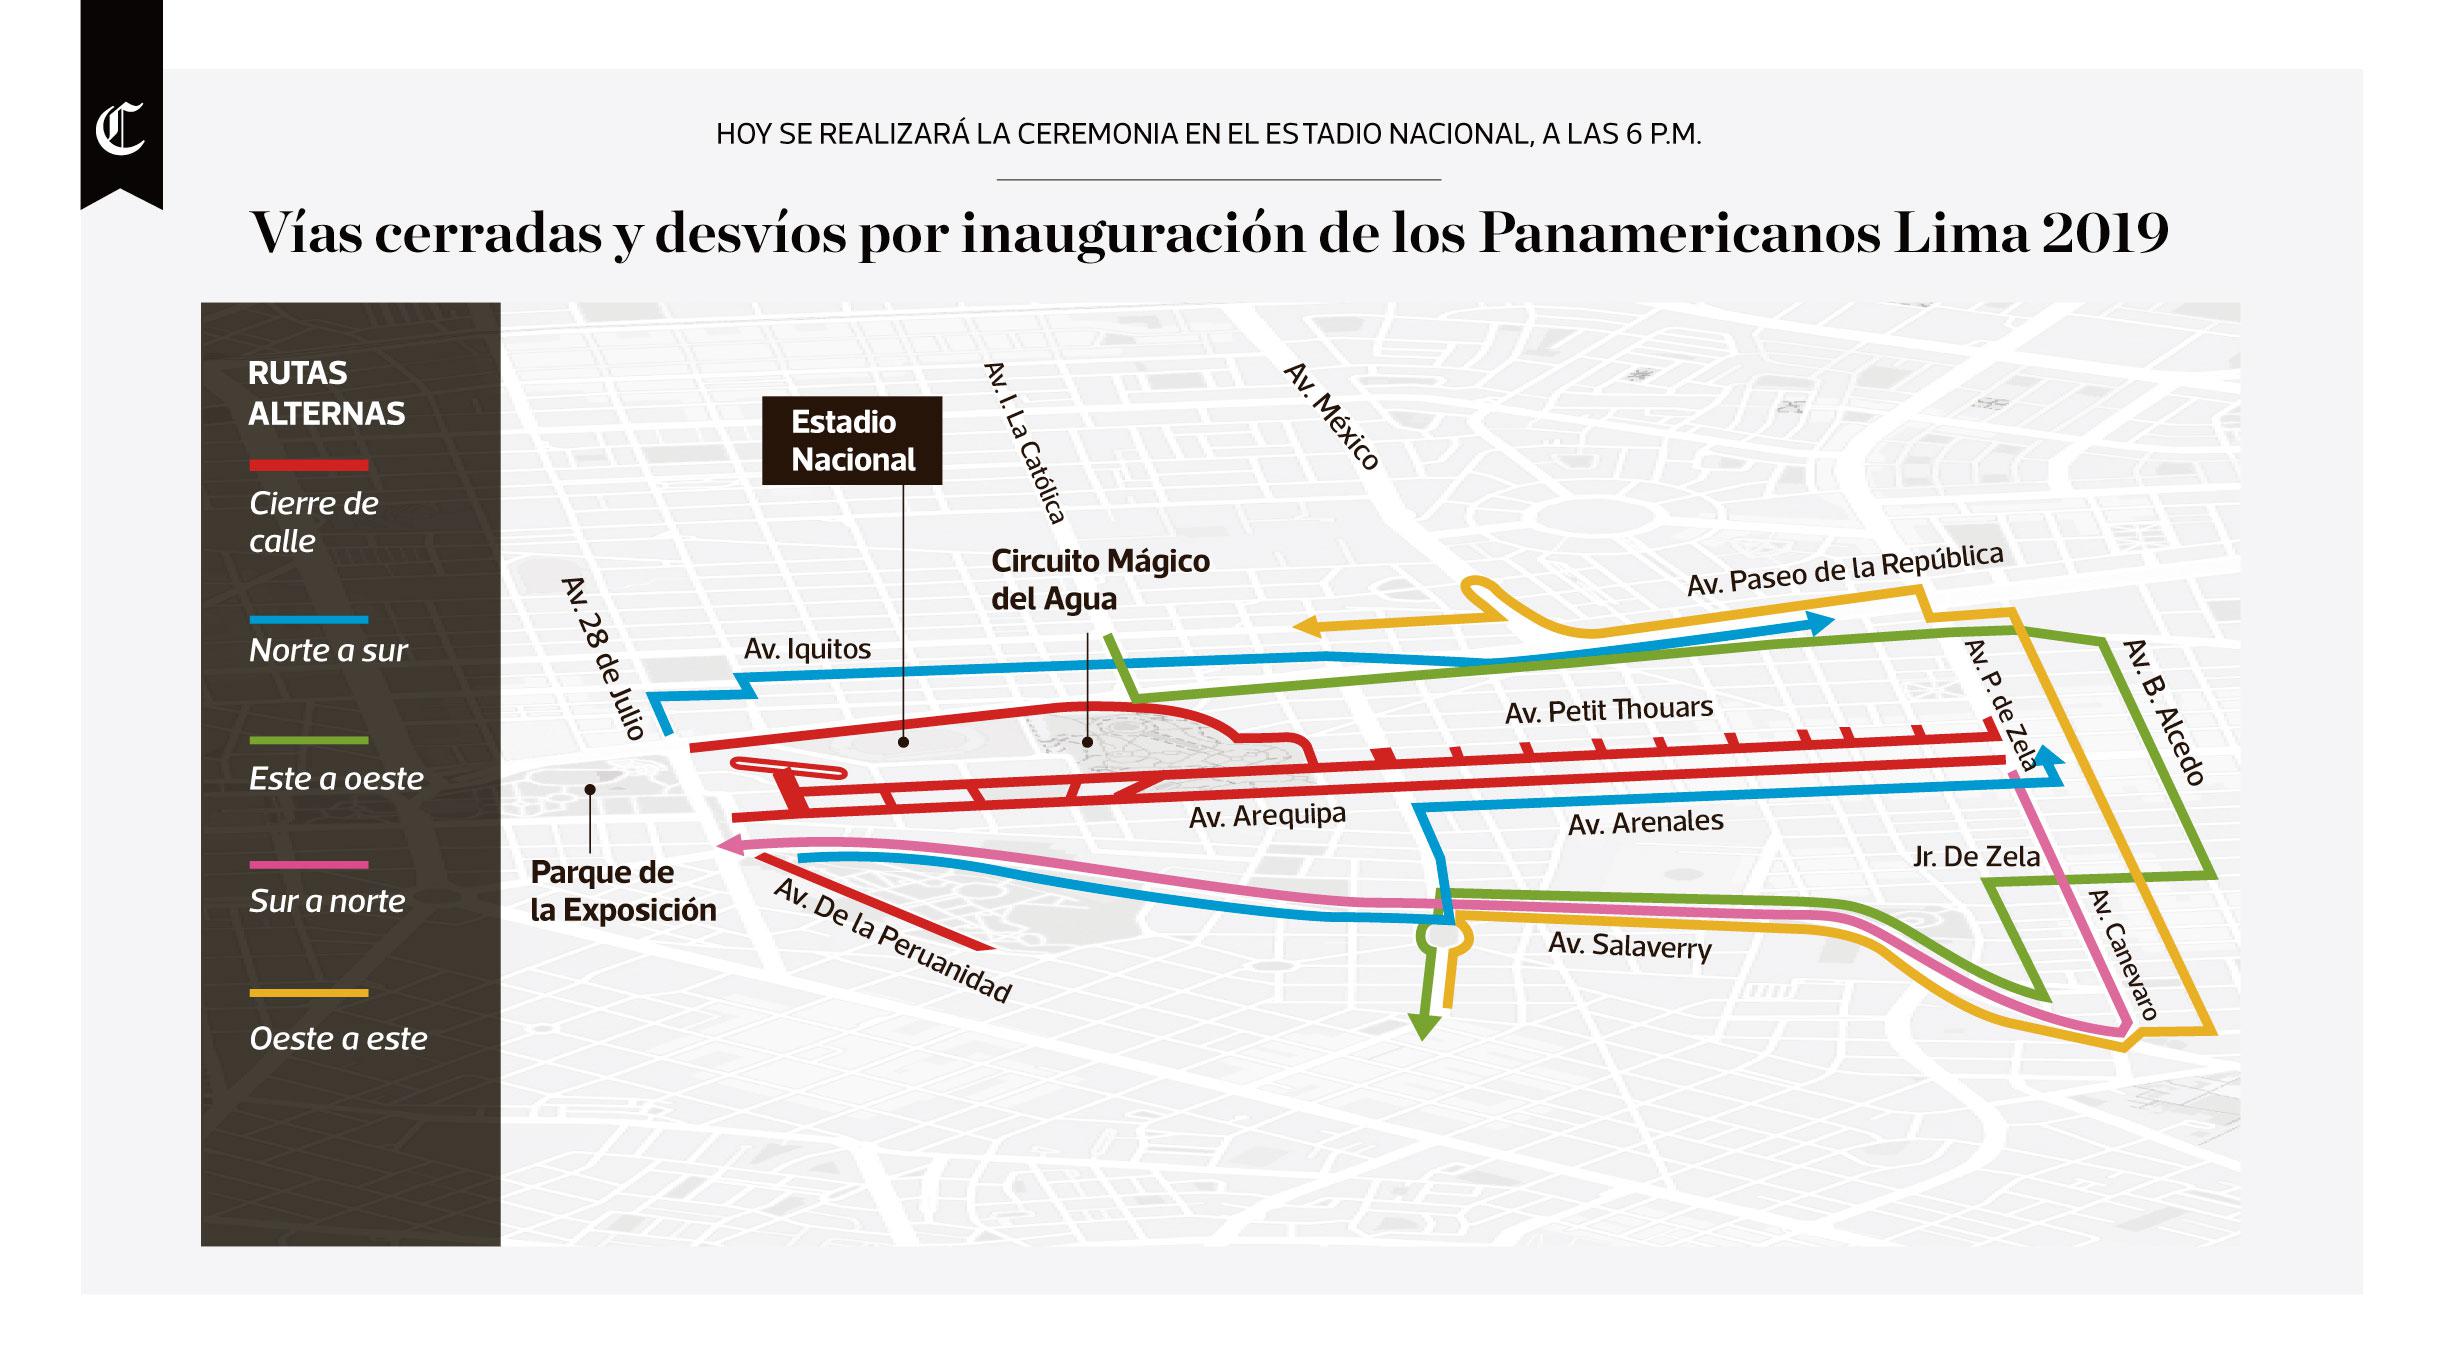 Infografía publicada en el diario El Comercio el 26/07/2019.